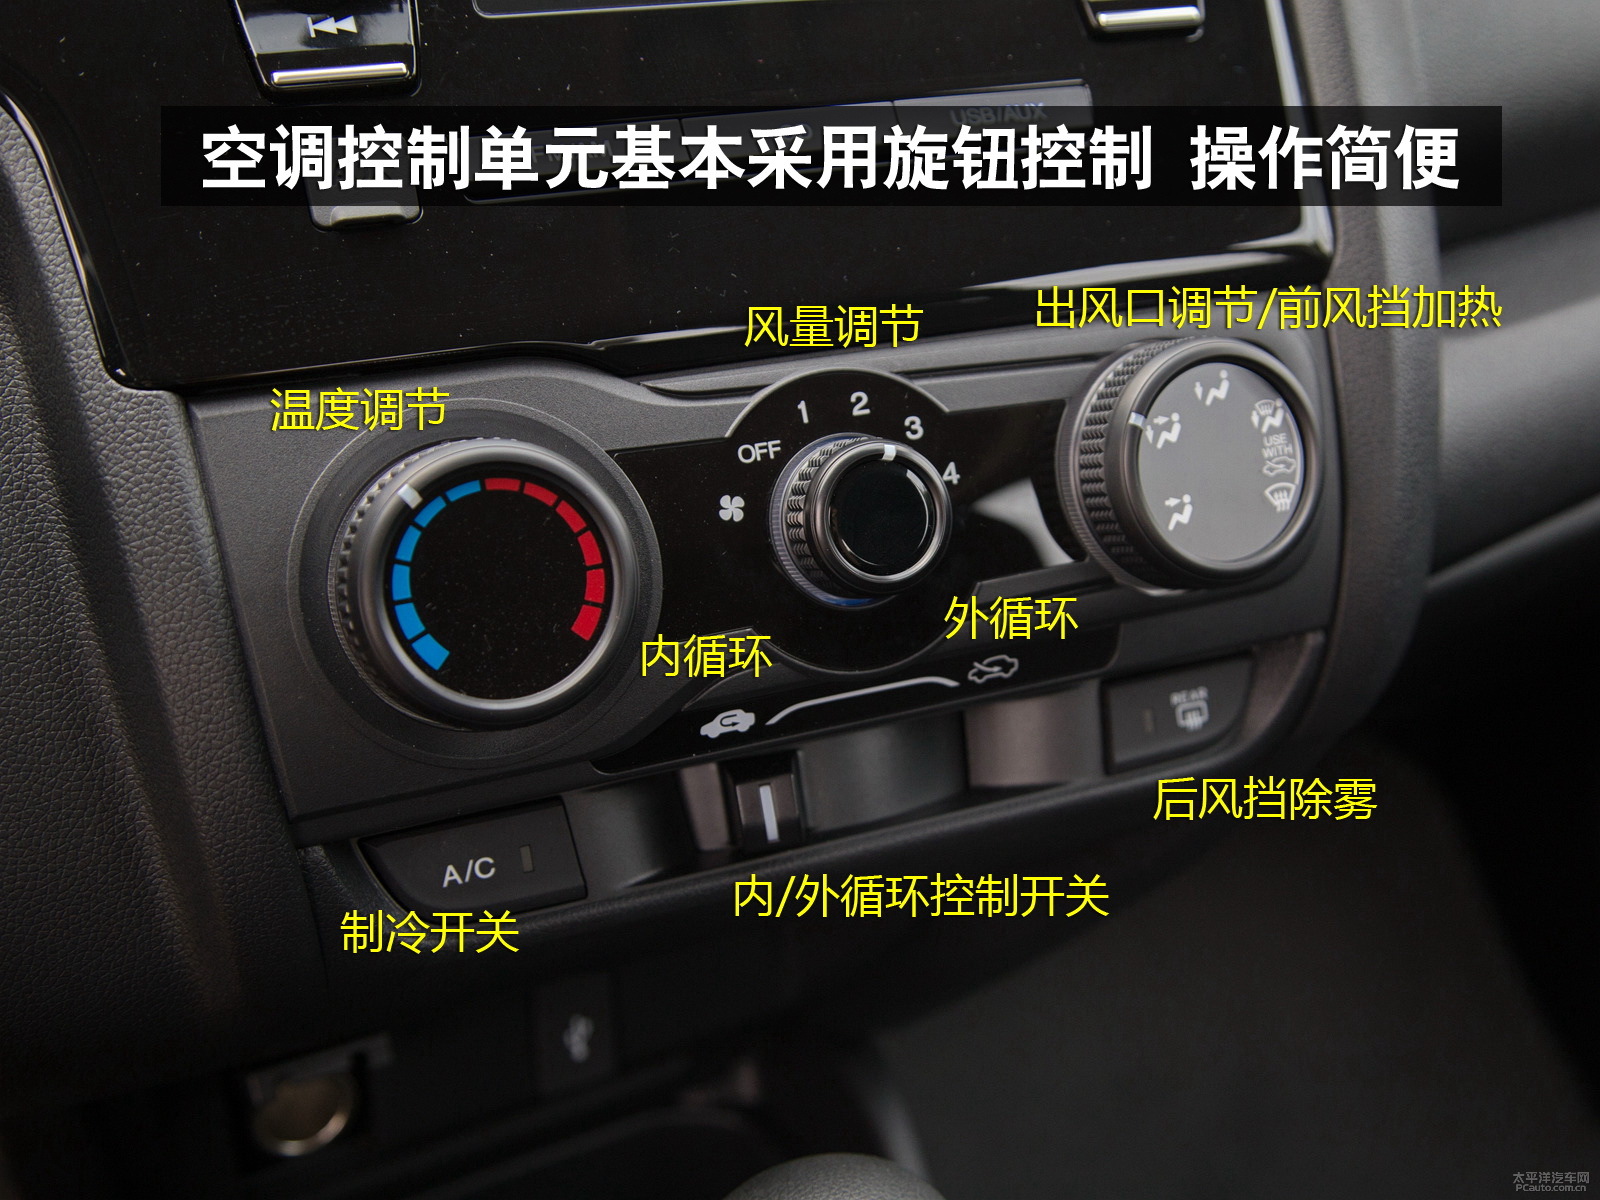 空调控制单元的旋钮以及按键标识清晰,功能明确,操作非常简便.